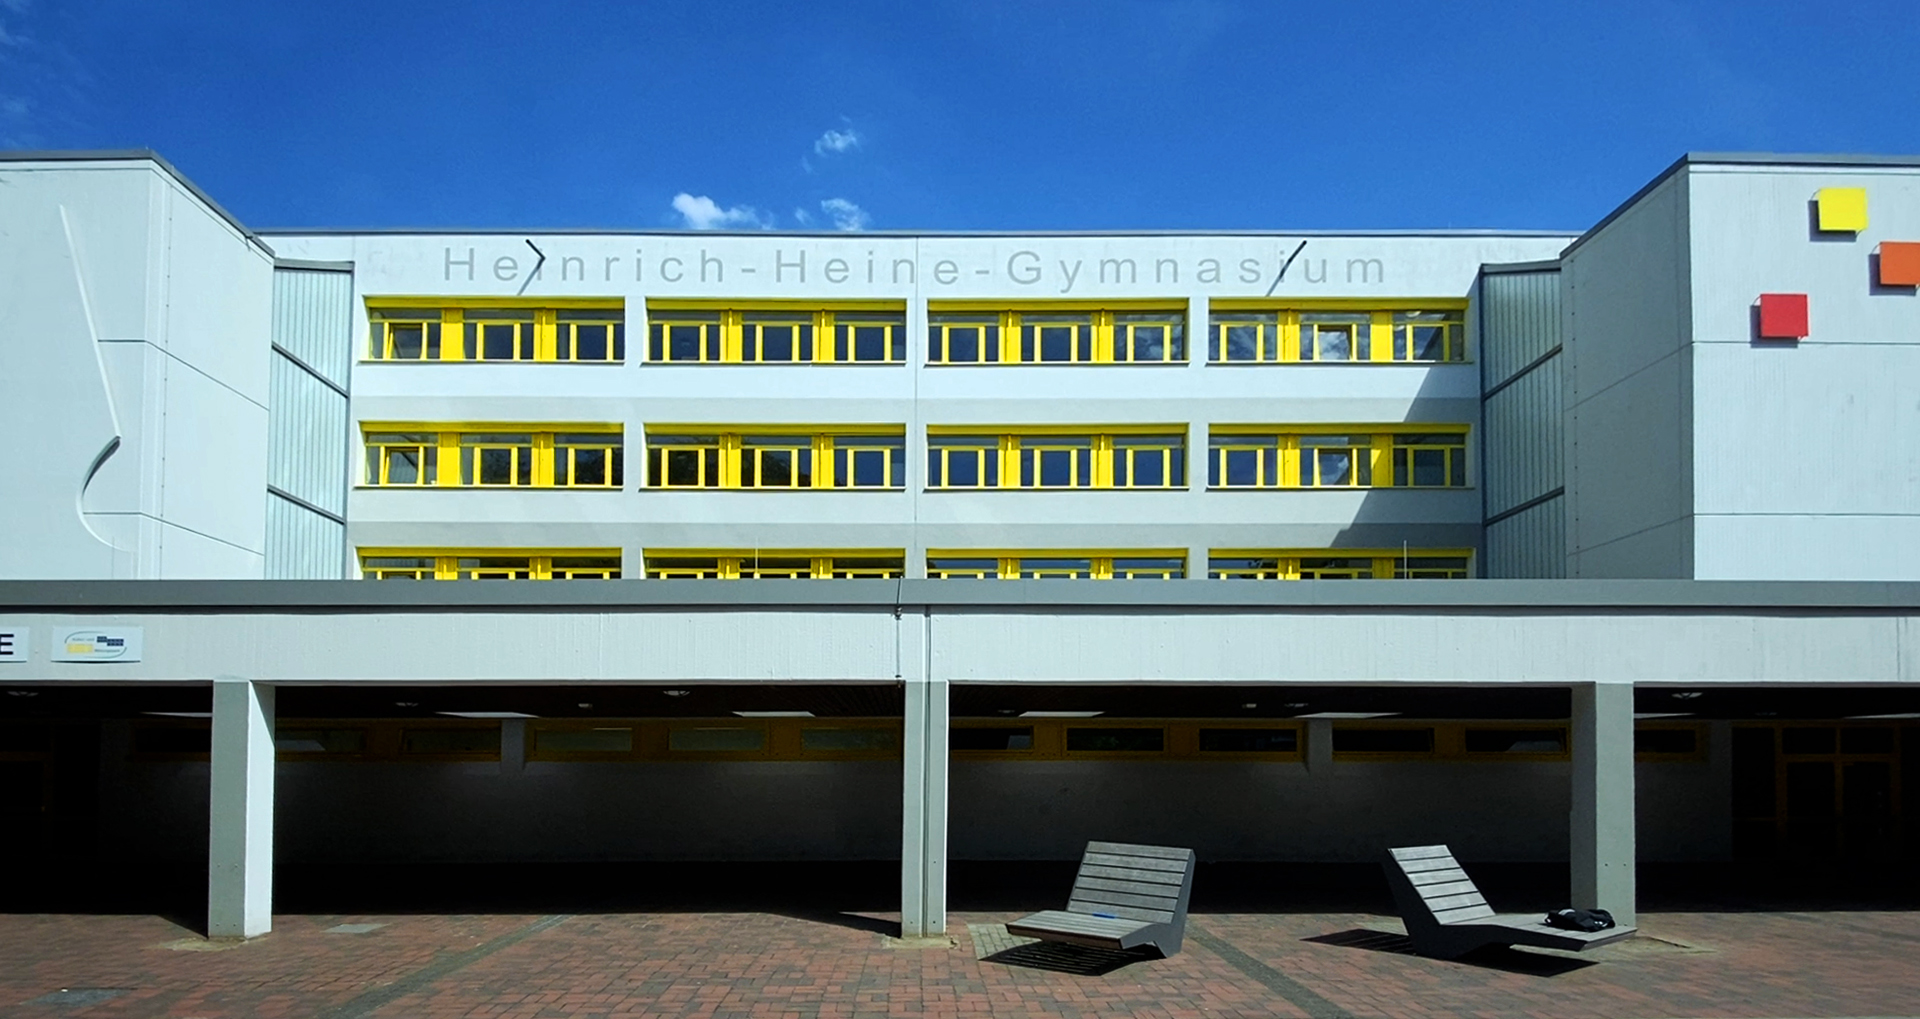 Heinrich-Heine-Gymnasium Dortmund: Mit iPad Geräten modernen Unterricht realisieren